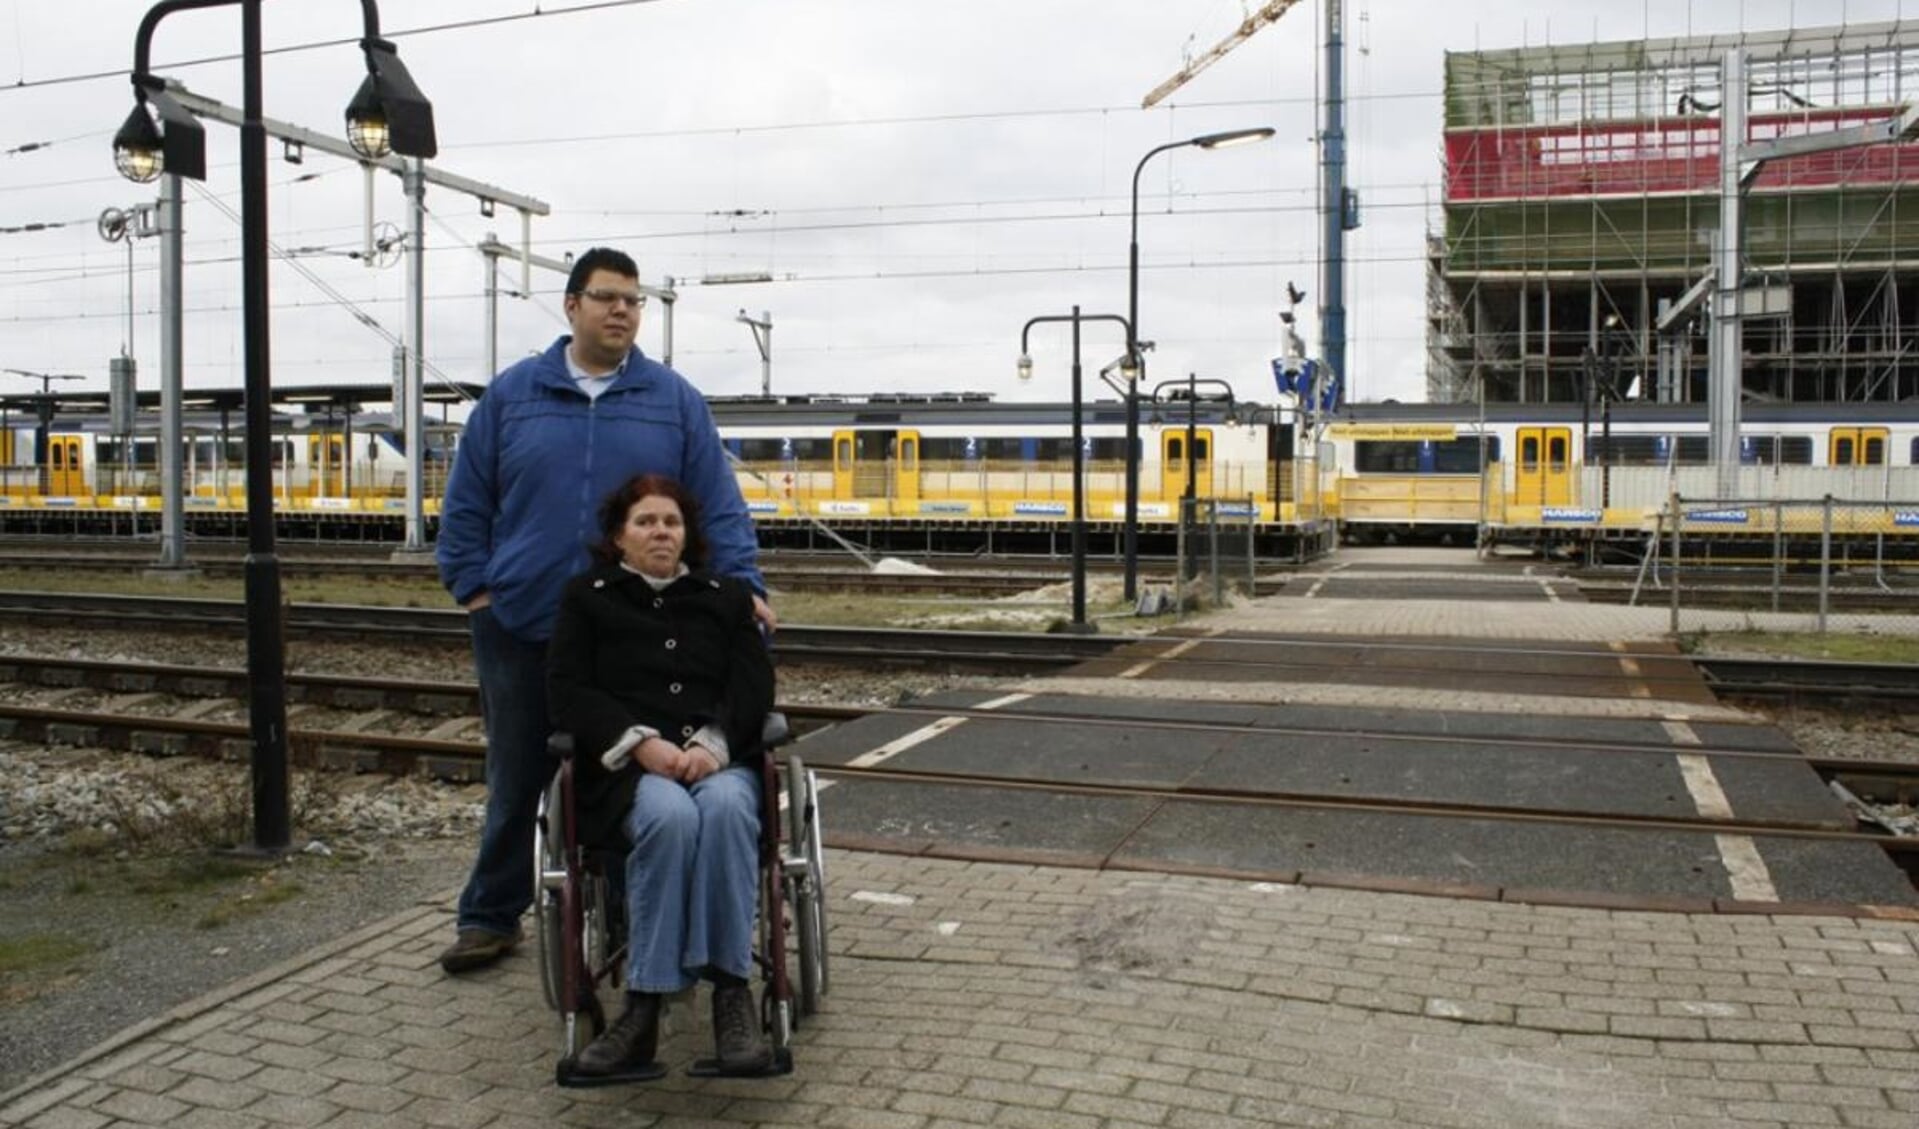 Soufyan en zijn moeder in 2014, toen ze problemen hadden op het NS station waar geen liften waren voor mensen in een rolstoel